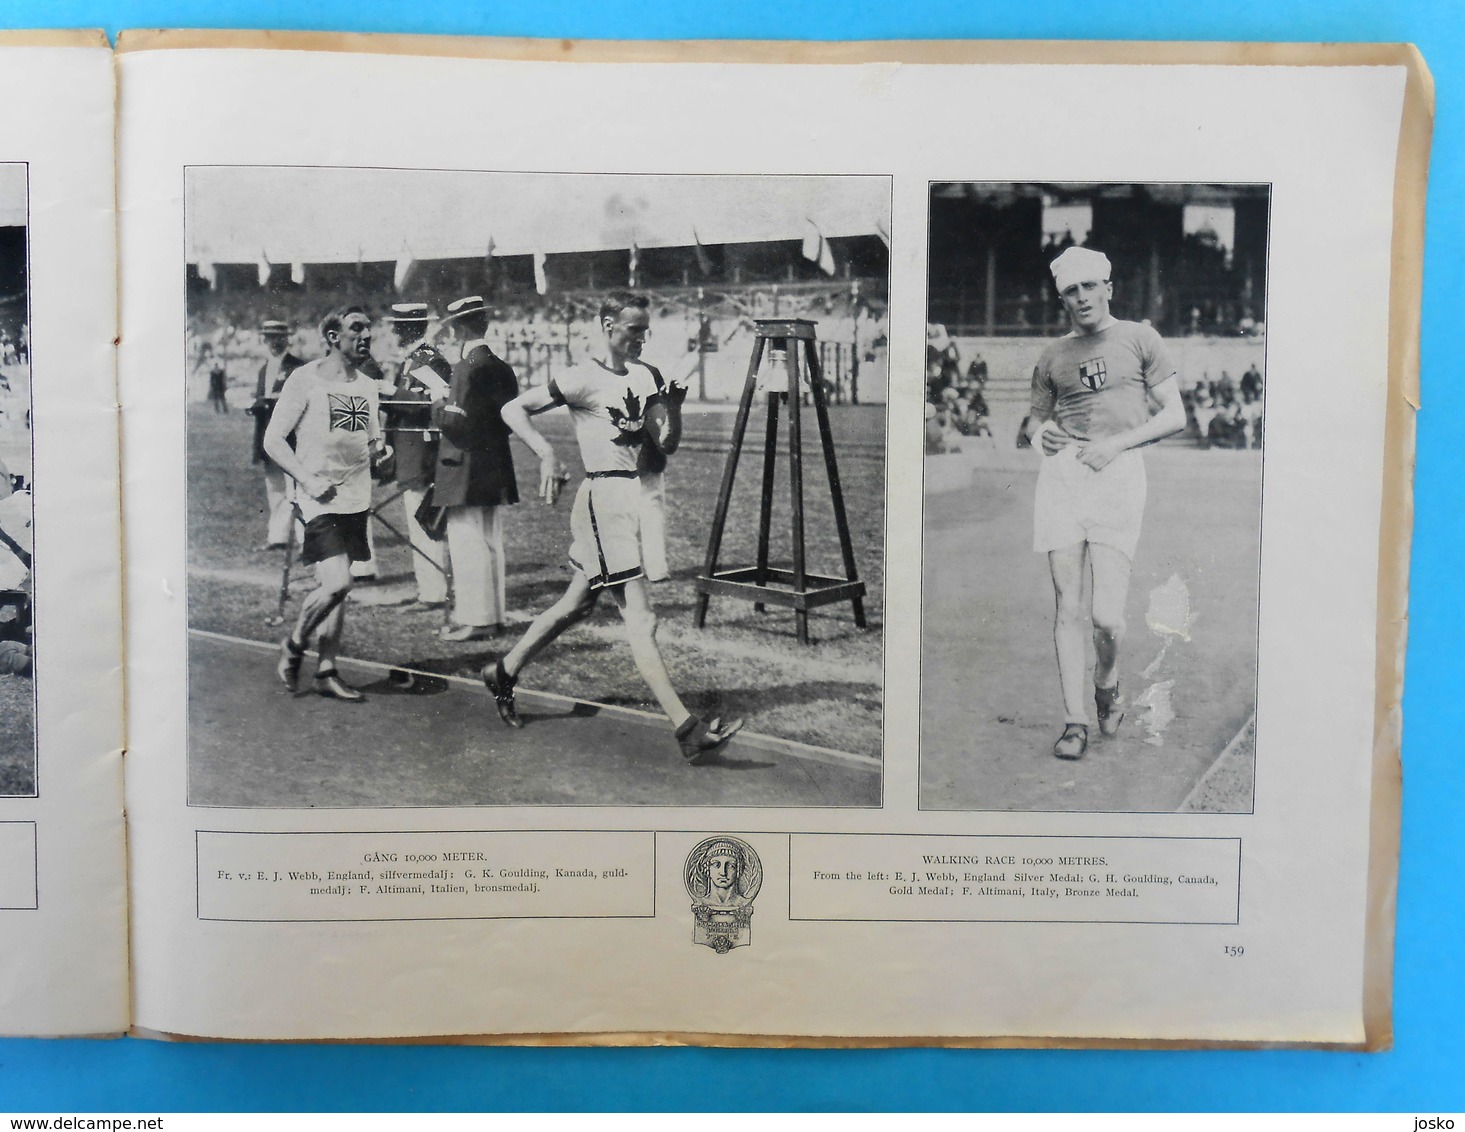 WRESTLING on OLYMPIC GAMES 1912 STOCKHOLM vintage programme/review 1912.y * lutte ringen lotta tug of war racewalking